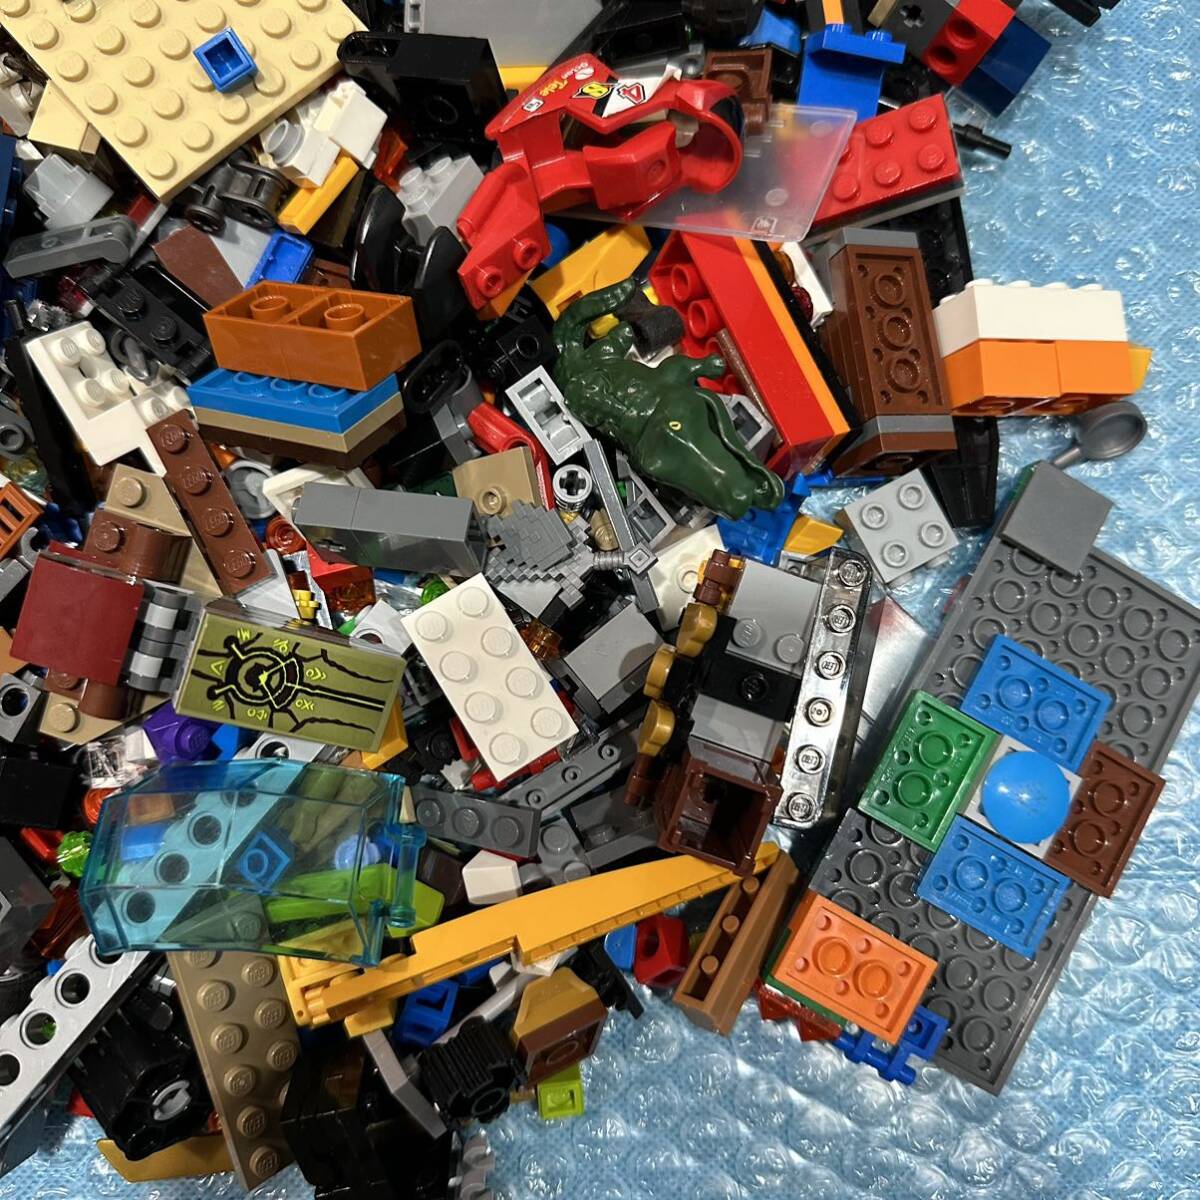 LEGO Lego блок много продажа комплектом примерно 1.5kg транспортное средство блок детали основа доска мой n craft fig и т.п. различный (11)80